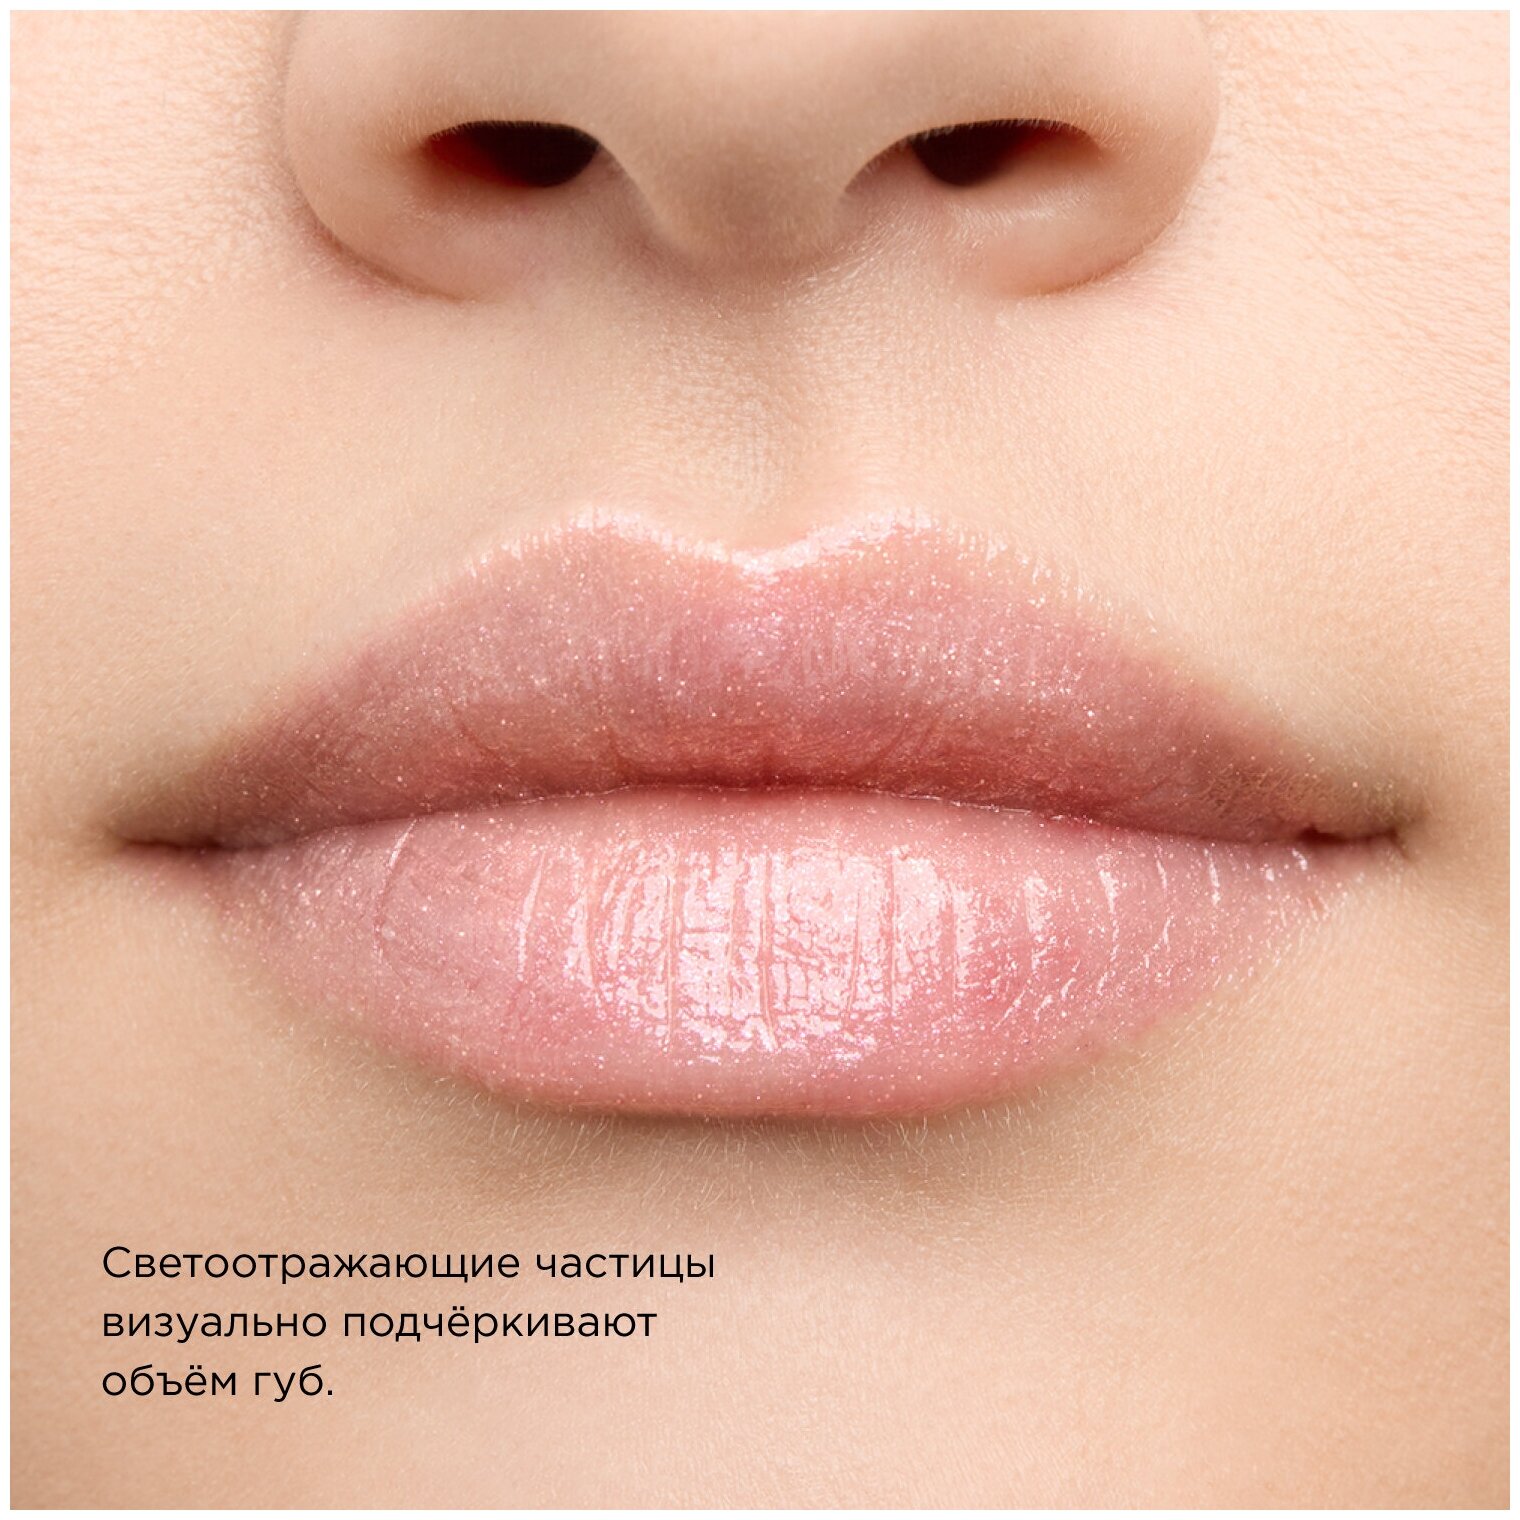 KRYGINA cosmetics Маска бальзам для увлажнения губ Lip Mask Glaze, 7 мл